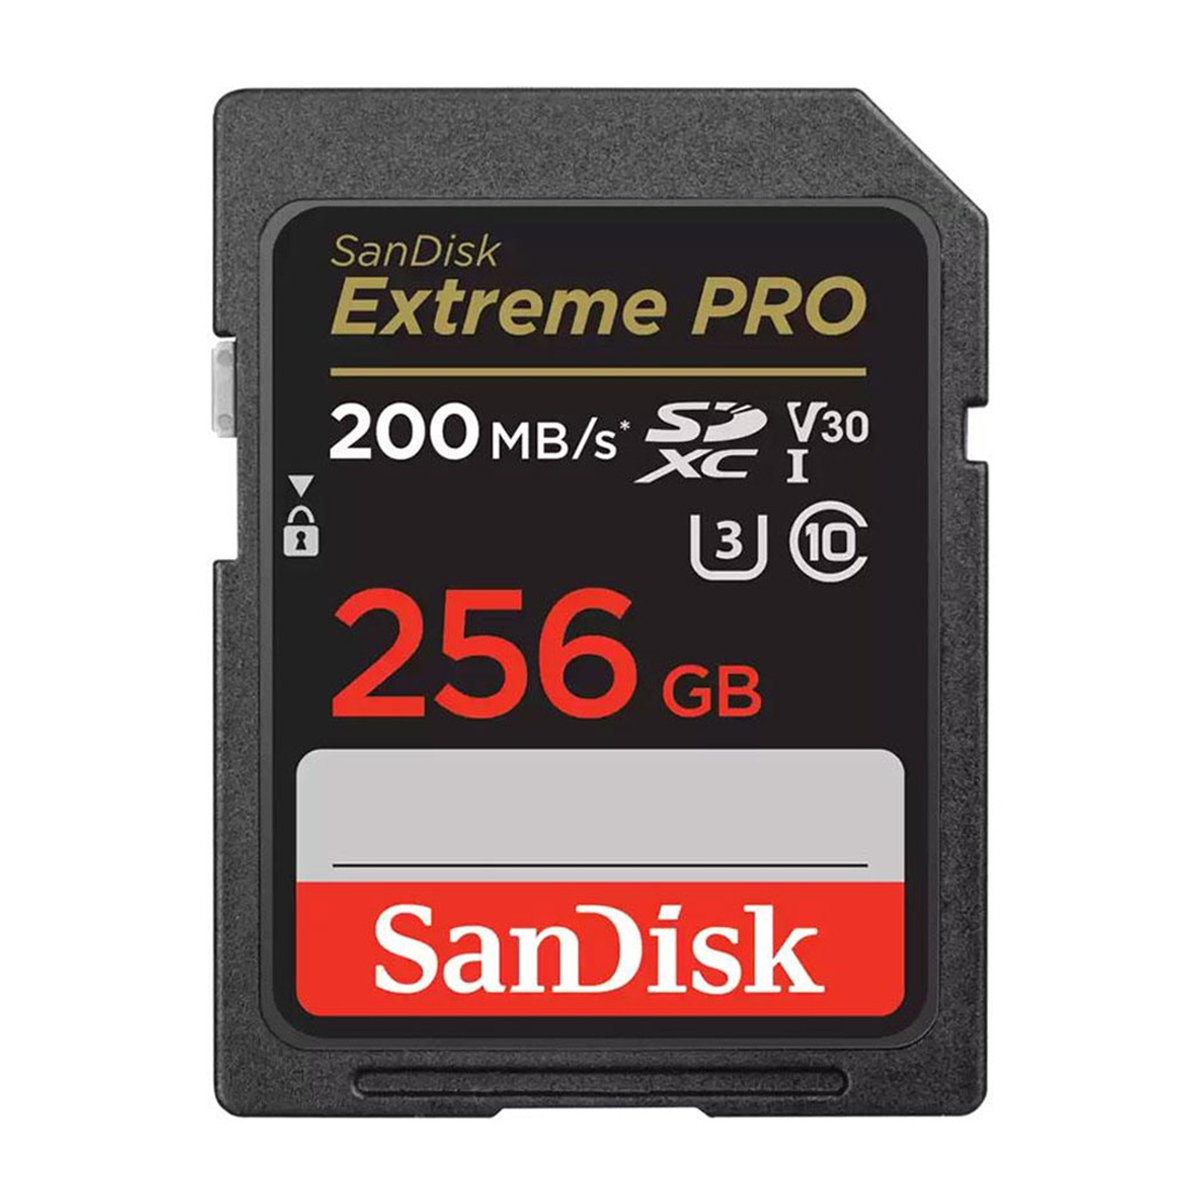 کارت حافظه SDXC سن دیسک مدل Extreme Pro V30 کلاس 10 استاندارد UHS-I U3 سرعت 200mbps ظرفیت 256 گیگابایت